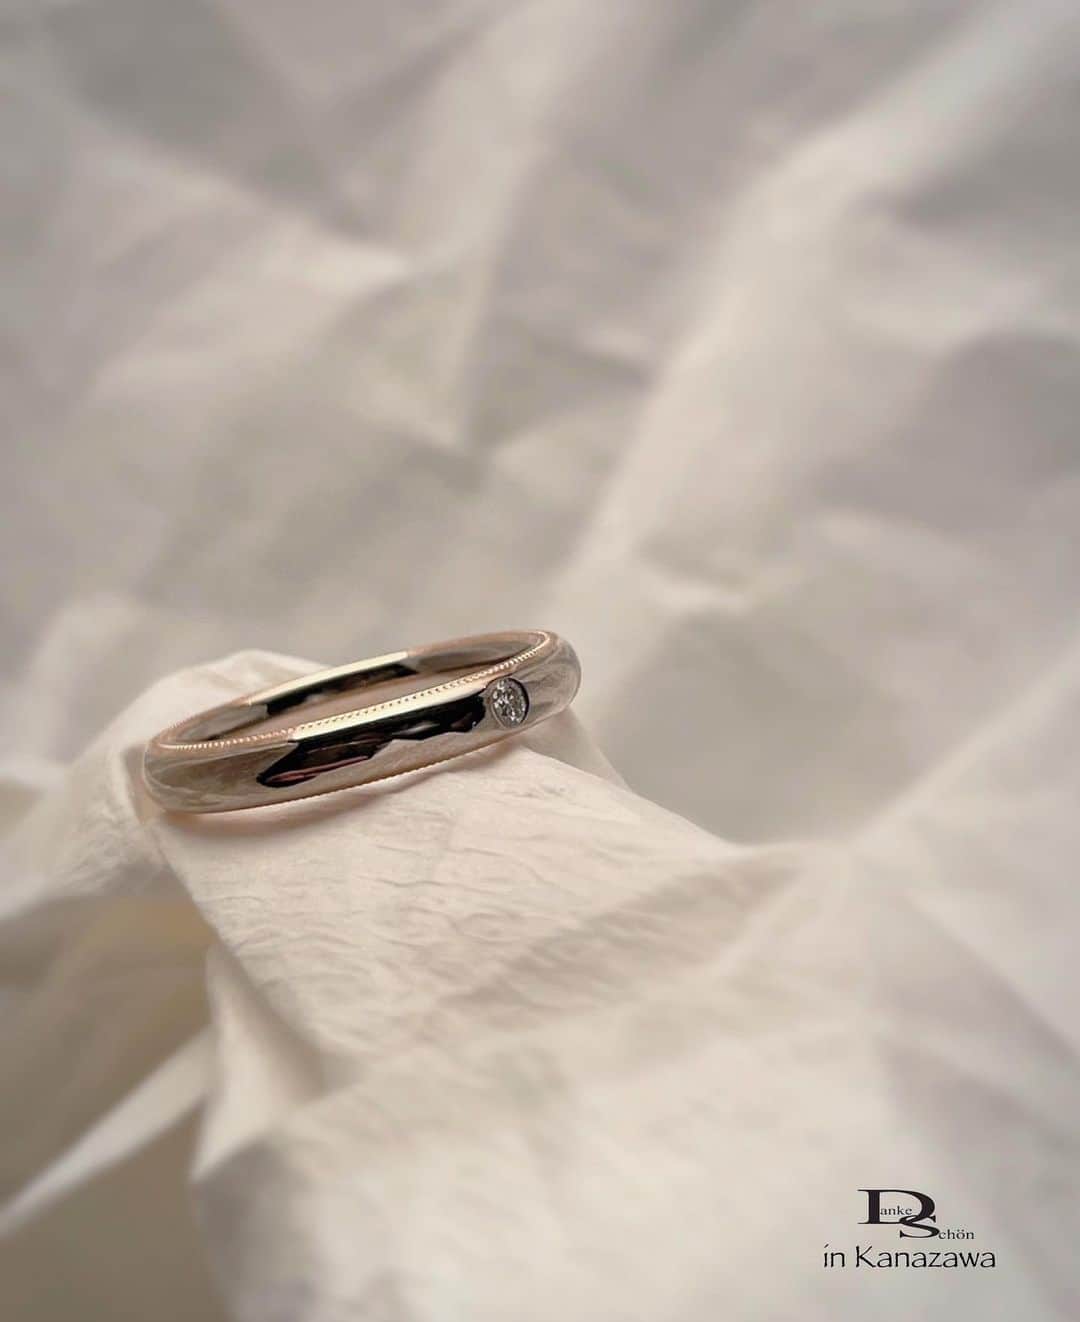 Danke schön ダンケ 金沢 結婚指輪 鍛造のインスタグラム：「・ ・ ハイ🙌🏻 今日のバウアーさんは これにします。 ・ ・ 指輪自体は2色3層の 接合モデル ・ ・ 指輪の側面に ミル打ち加工を施し ・ ・ 指輪を正面から見ているだけでは 至ってふ・つ・う ・ ・ 指輪をはめようと手に取った時に 始めて気付く ・ ・ こんな｢  側面 」にミル打ちが 隠れていたとは…と良く言われます😆 ・ ・ 勿論、指が動く度に 手が動く度に ・ ・ 繊細なミル打ちの ちゅぶちゅぶ が キラキラします！ ・ ・ と… ツラツラ書いてますが ・ ・ 皆さん🙌🏻 気付いてますか？ ・ ・ ｢ミル打ちデザイン」って たくさん指輪のデザインとして 用いられてはいますが ・ ・ 良く目にするのは ｢単色地金」が多くないですか？ ・ ・ 接合した地金(コンビモデル)に対して ミル打ちって…案外少ない…と思いませんか？ ・ ・ しかもロー付けしたコンビの地金ではなく 『接合し圧着』地金でのコンビに対してのミル打ち ・ ・ 📌𝐏𝐨𝐢𝐧𝐭 2色3層とは？ 違う地金同士をロー付けではなく 接合し圧着した地金  ※ロー付けとは？（業界用語） 分かりやすく言うなら｢接着」  ミルはミルですが そのミルを施す指輪自体の作りに違いありですよ🤭 ・ ・ ・ ・ ・  【工業系 鍛造削り出し】 🇩🇪クリスチャンバウアー 専門店 ・ ・ ワンランク上をいくノウハウの クリスチャンバウアーの選び方なら 『Danke schön 』 ・ ・ ・ —— 𝐃𝐚𝐧𝐤𝐞——— ▪︎ Instagramプロフィール 🔜 @danke2005  —————————————————————𝐒𝐜𝐡⍥𝐧——— ・ ・ #クリスチャンバウアー金沢 #鍛造指輪 #鍛造リング #結婚指輪 #結婚指輪オーダー #切削加工 #結婚指輪探し #結婚指輪選び #指輪探し #指輪選び #マリッジリング #結婚指輪金沢 #金沢結婚指輪 #セカンドリング #結婚指輪買い替え #地金屋鍛造 #ブライダルリング #結婚記念日 #ベビーリング #ドイツリング #クリスチャンバウアーダンケ #クリスチャンバウアーdanke #ミルグレイン #ミル打ち   ------------------------------------------✈︎ ---------  鍛造削り出し 🇩🇪クリスチャンバウアー 専門店 『𝐃𝐚𝐧𝐤𝐞 𝐬𝐜𝐡⍥𝐧』 ・ • 営業時間 am11:00〜pm9:00 • 定休日 : 木曜日 • 駐車場 : 店舗前OK • ご予約 : 優先 ・ ・ ——𝐃𝐚𝐧𝐤𝐞——————————————— ▪︎トップページ 🔜 @danke2005 ———————————————————-𝐒𝐜𝐡⍥𝐧————」